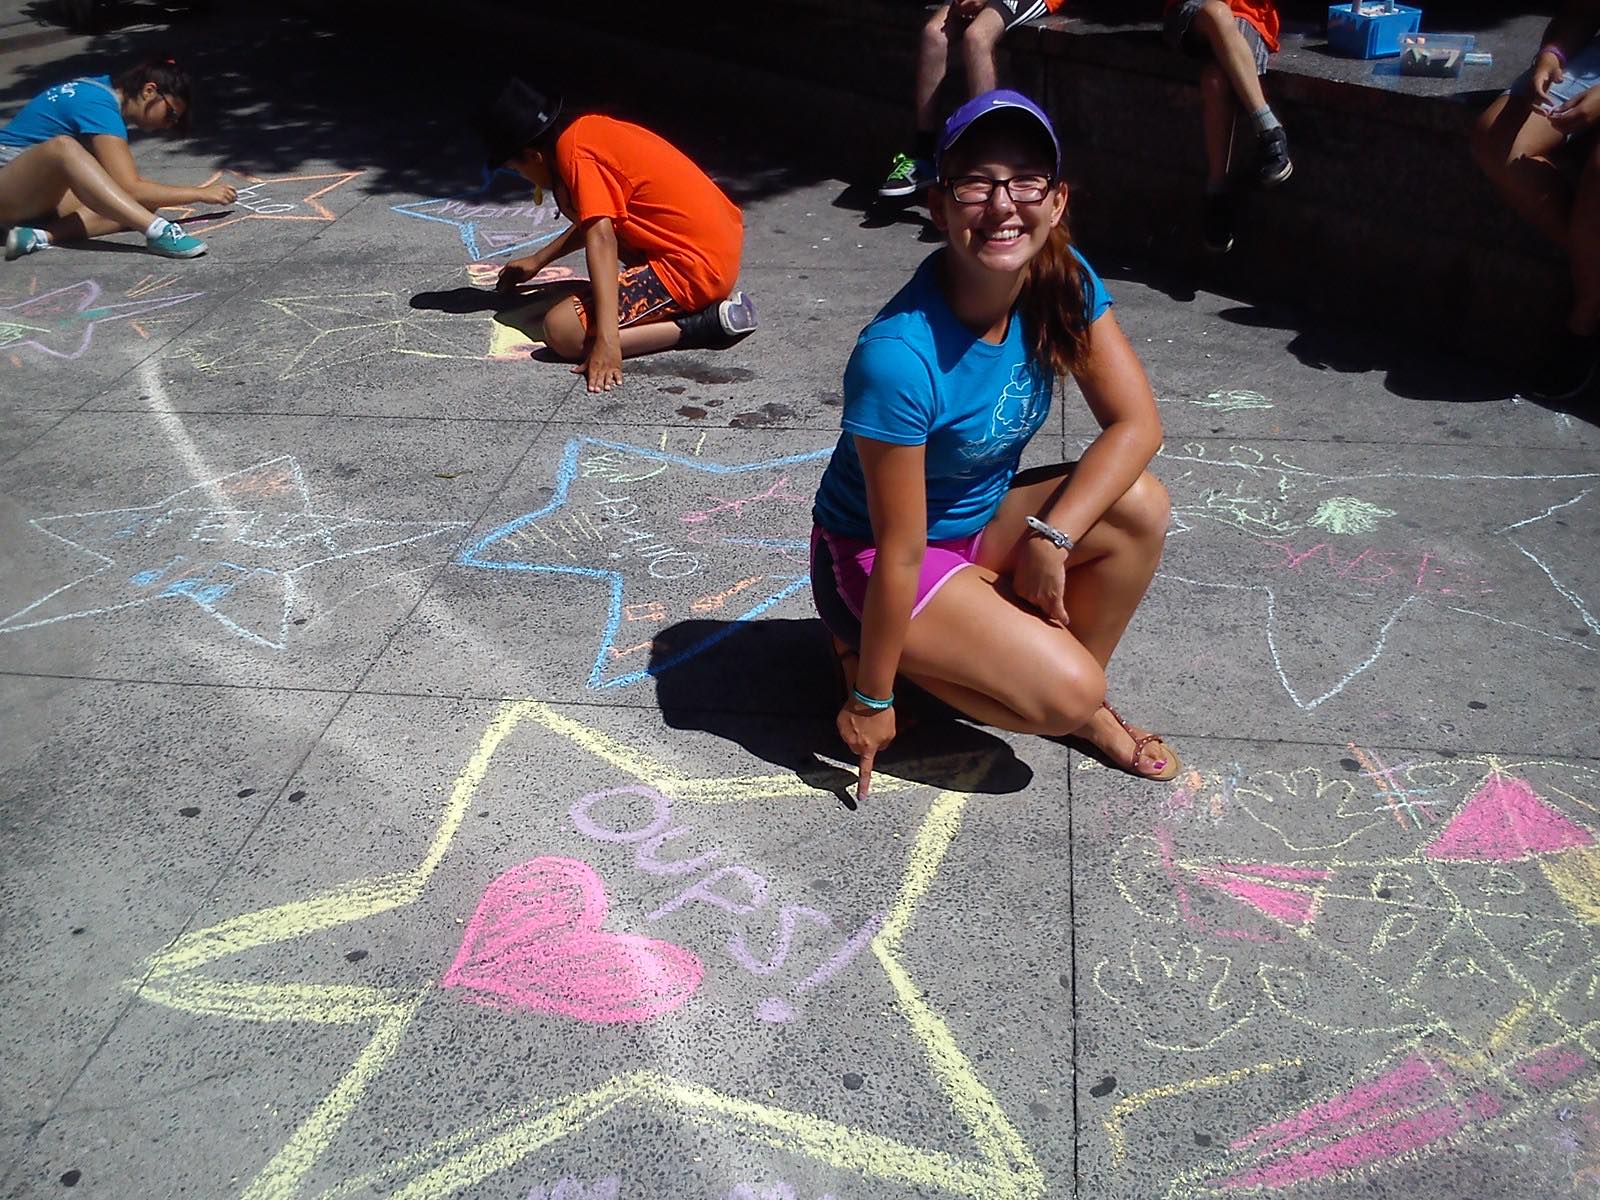 Jessica est accroupie devant un dessin sur l’asphalte, à la craie, d’une étoile avec un cœur et le texte « Oups! » au centre.